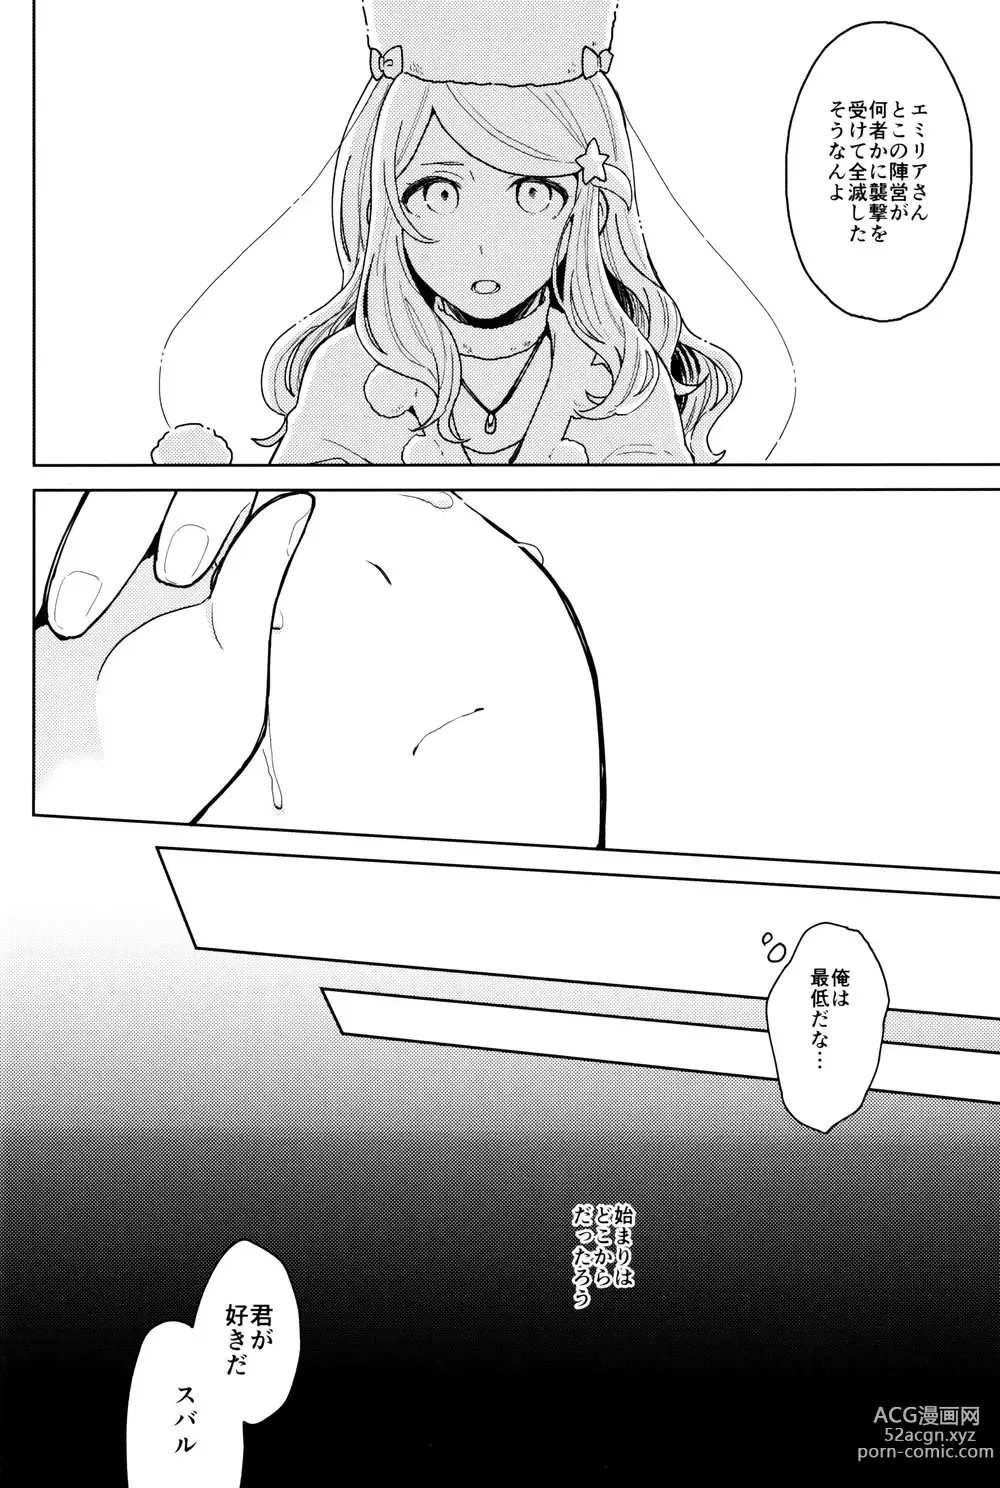 Page 17 of doujinshi Tsui no Sekai ni Kimi to Futari